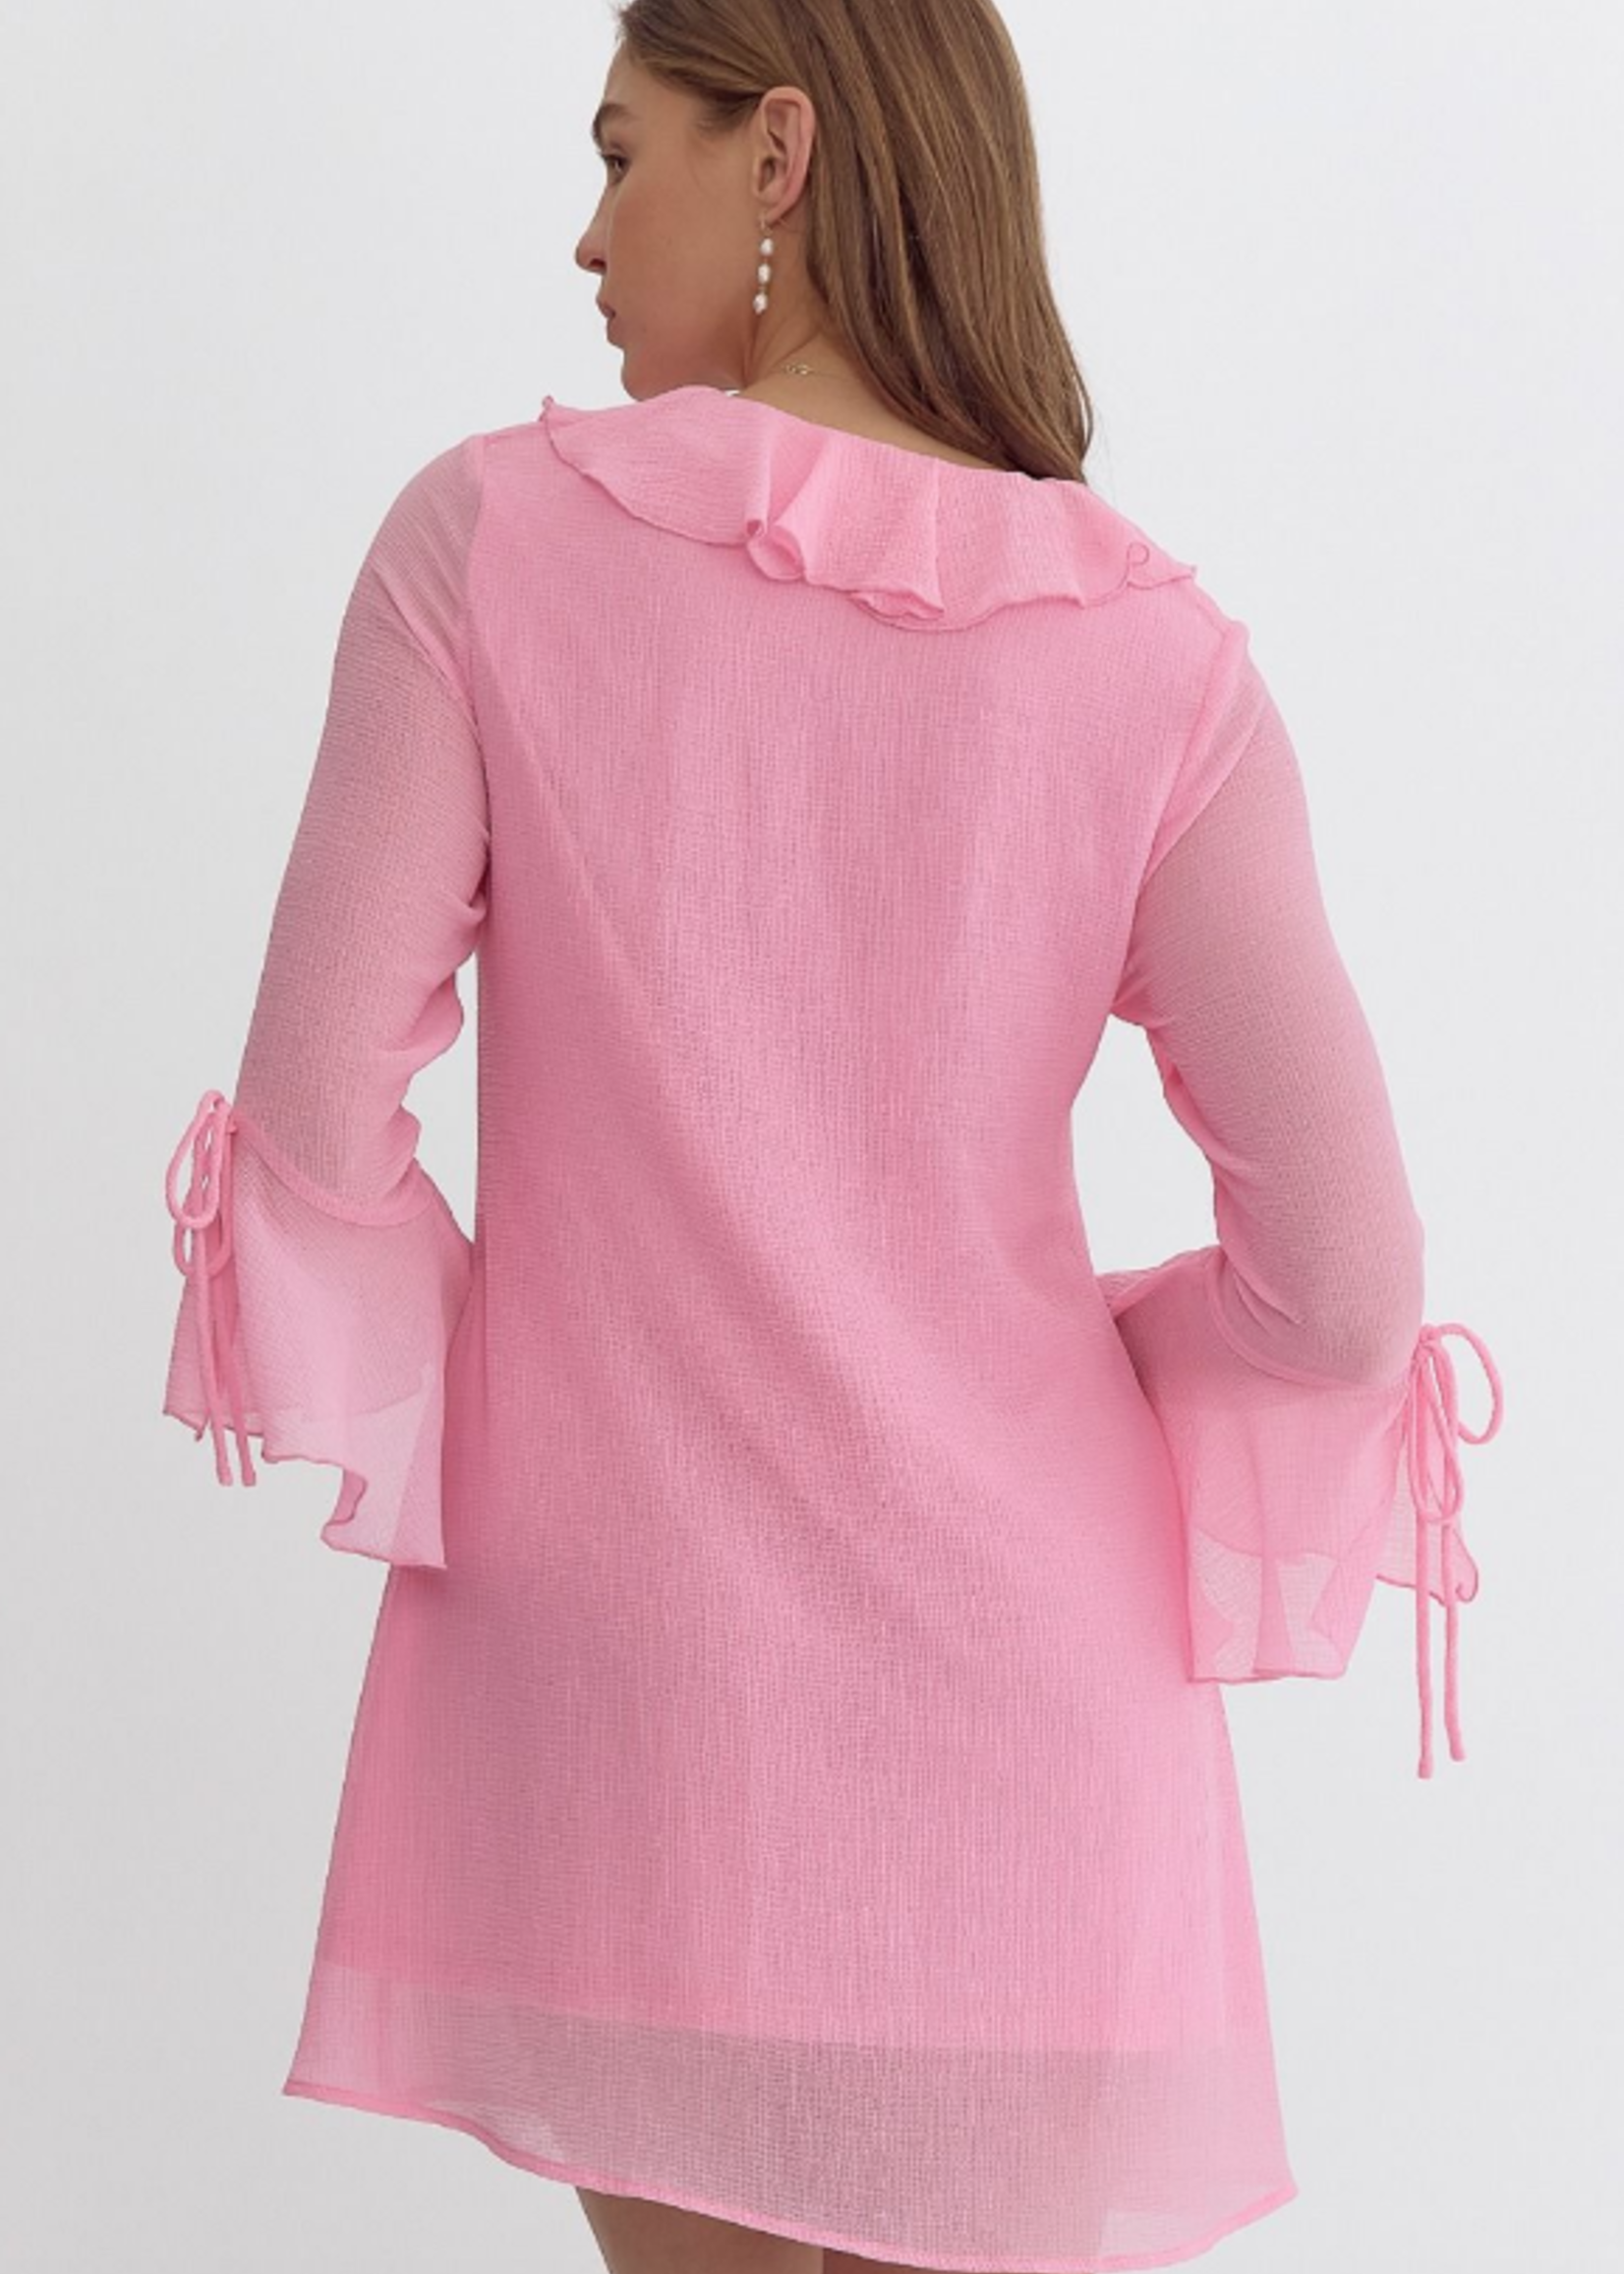 Pink About It Ruffle Dress